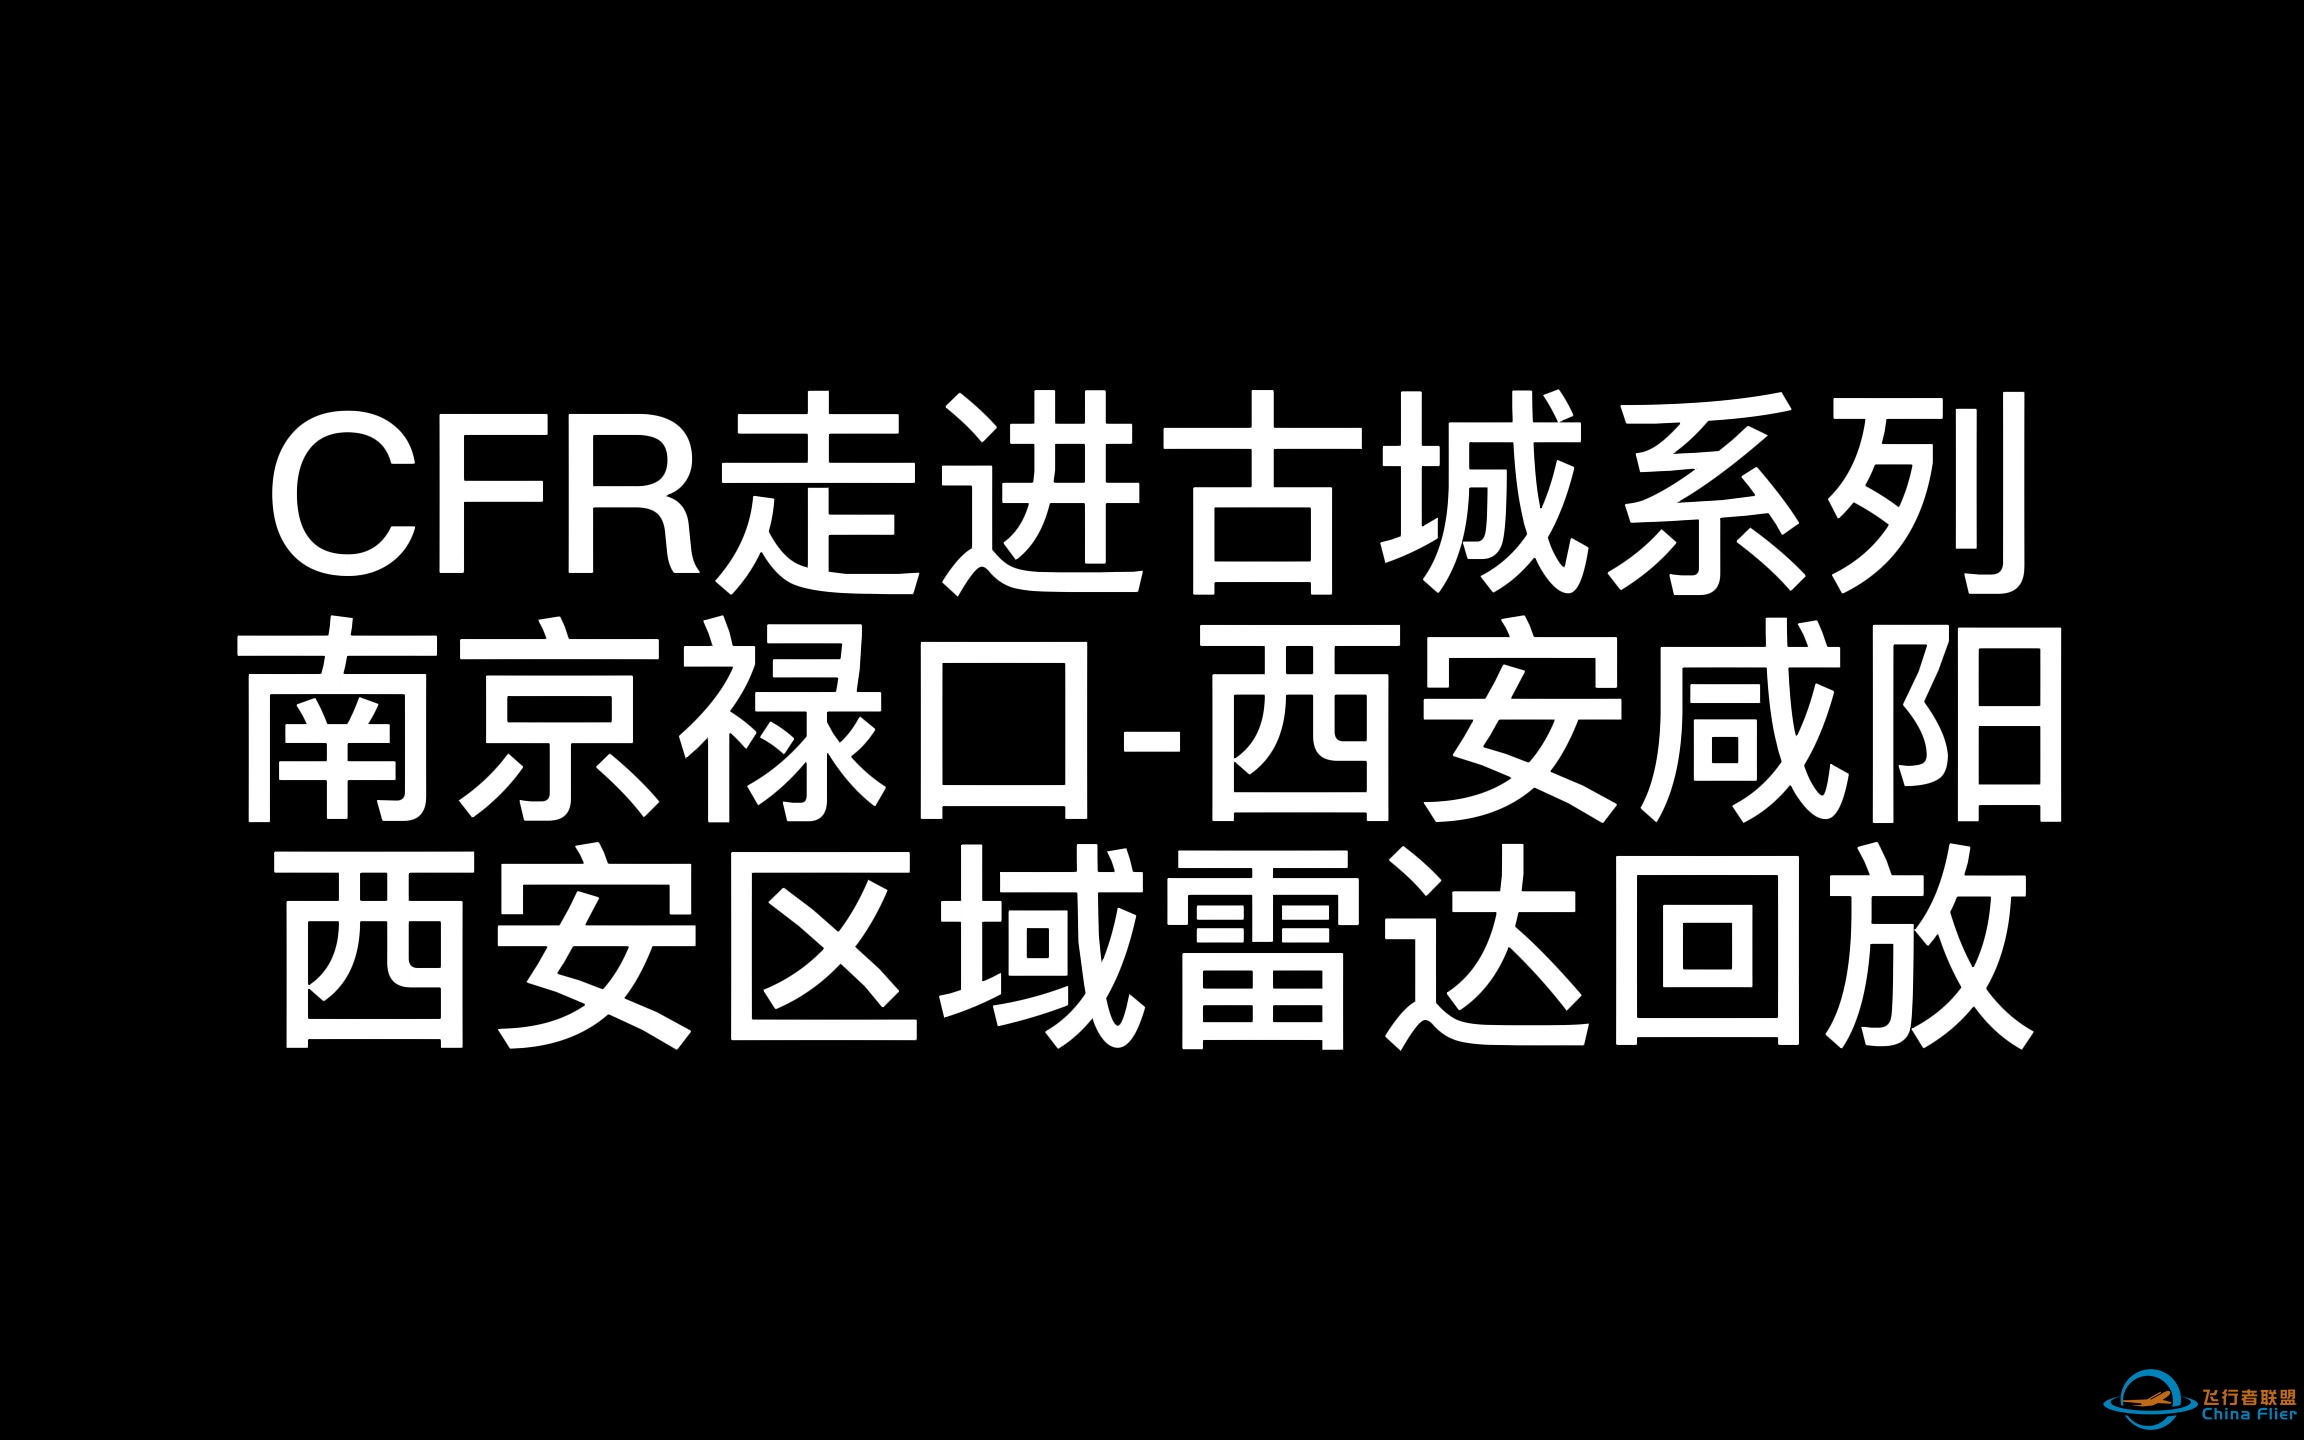 【联飞活动】CFR走进古城第二站 西安区域雷达回放-6503 